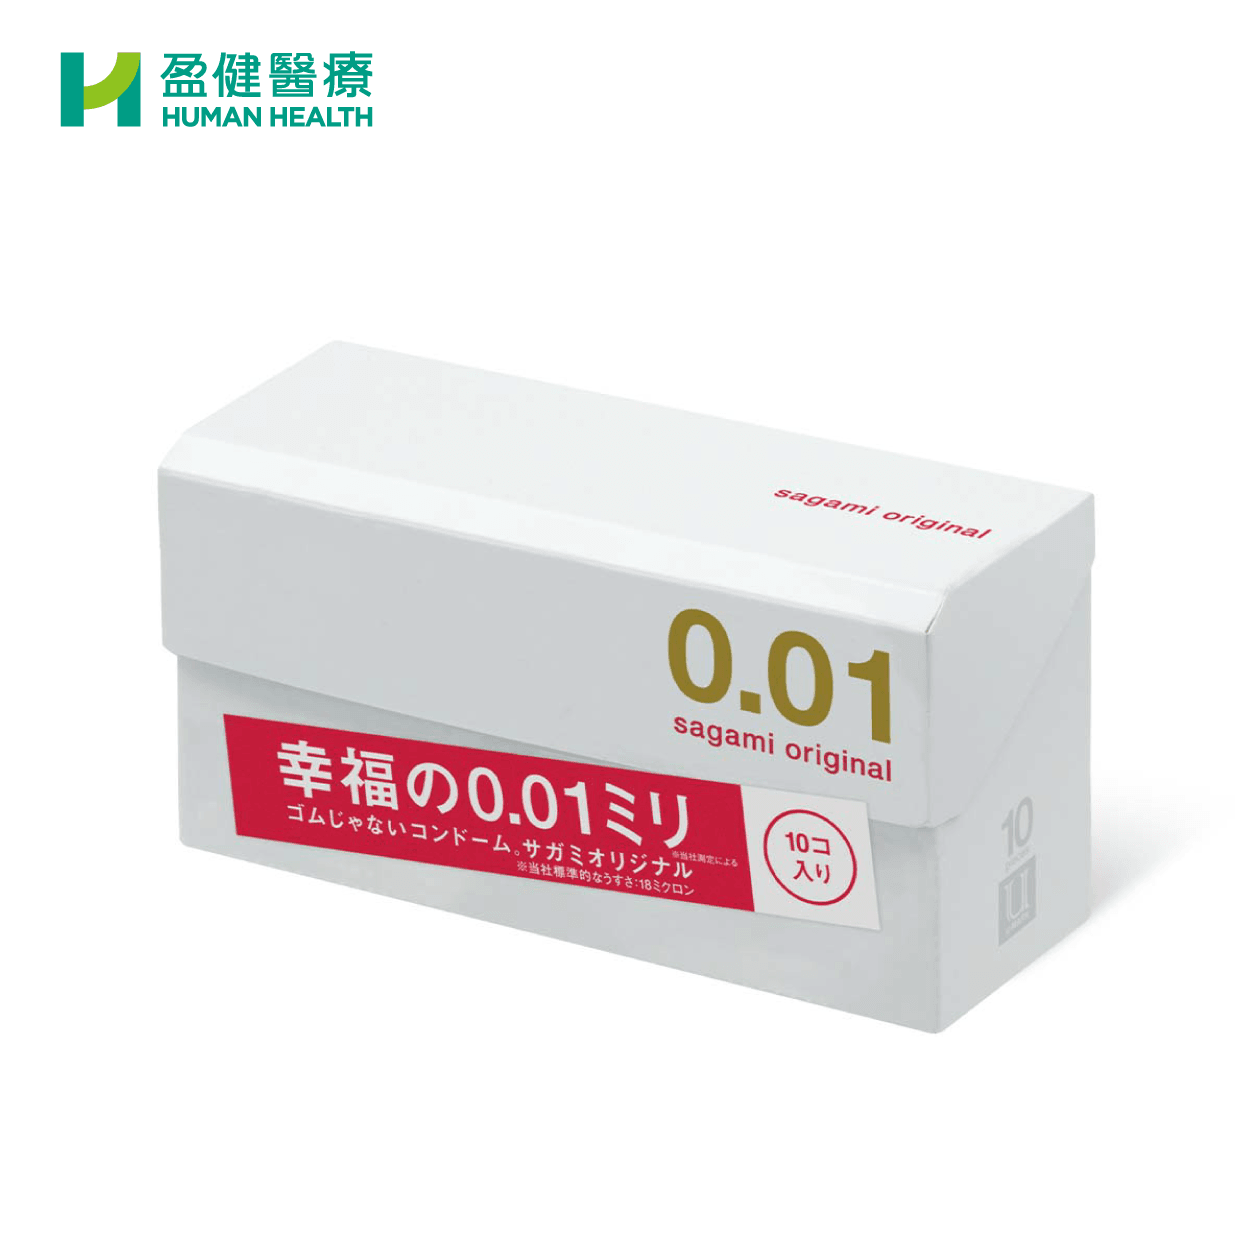 Sagami Original相模原創0.01 PU安全套 10s (C-SAG001) - 盈健醫療 -